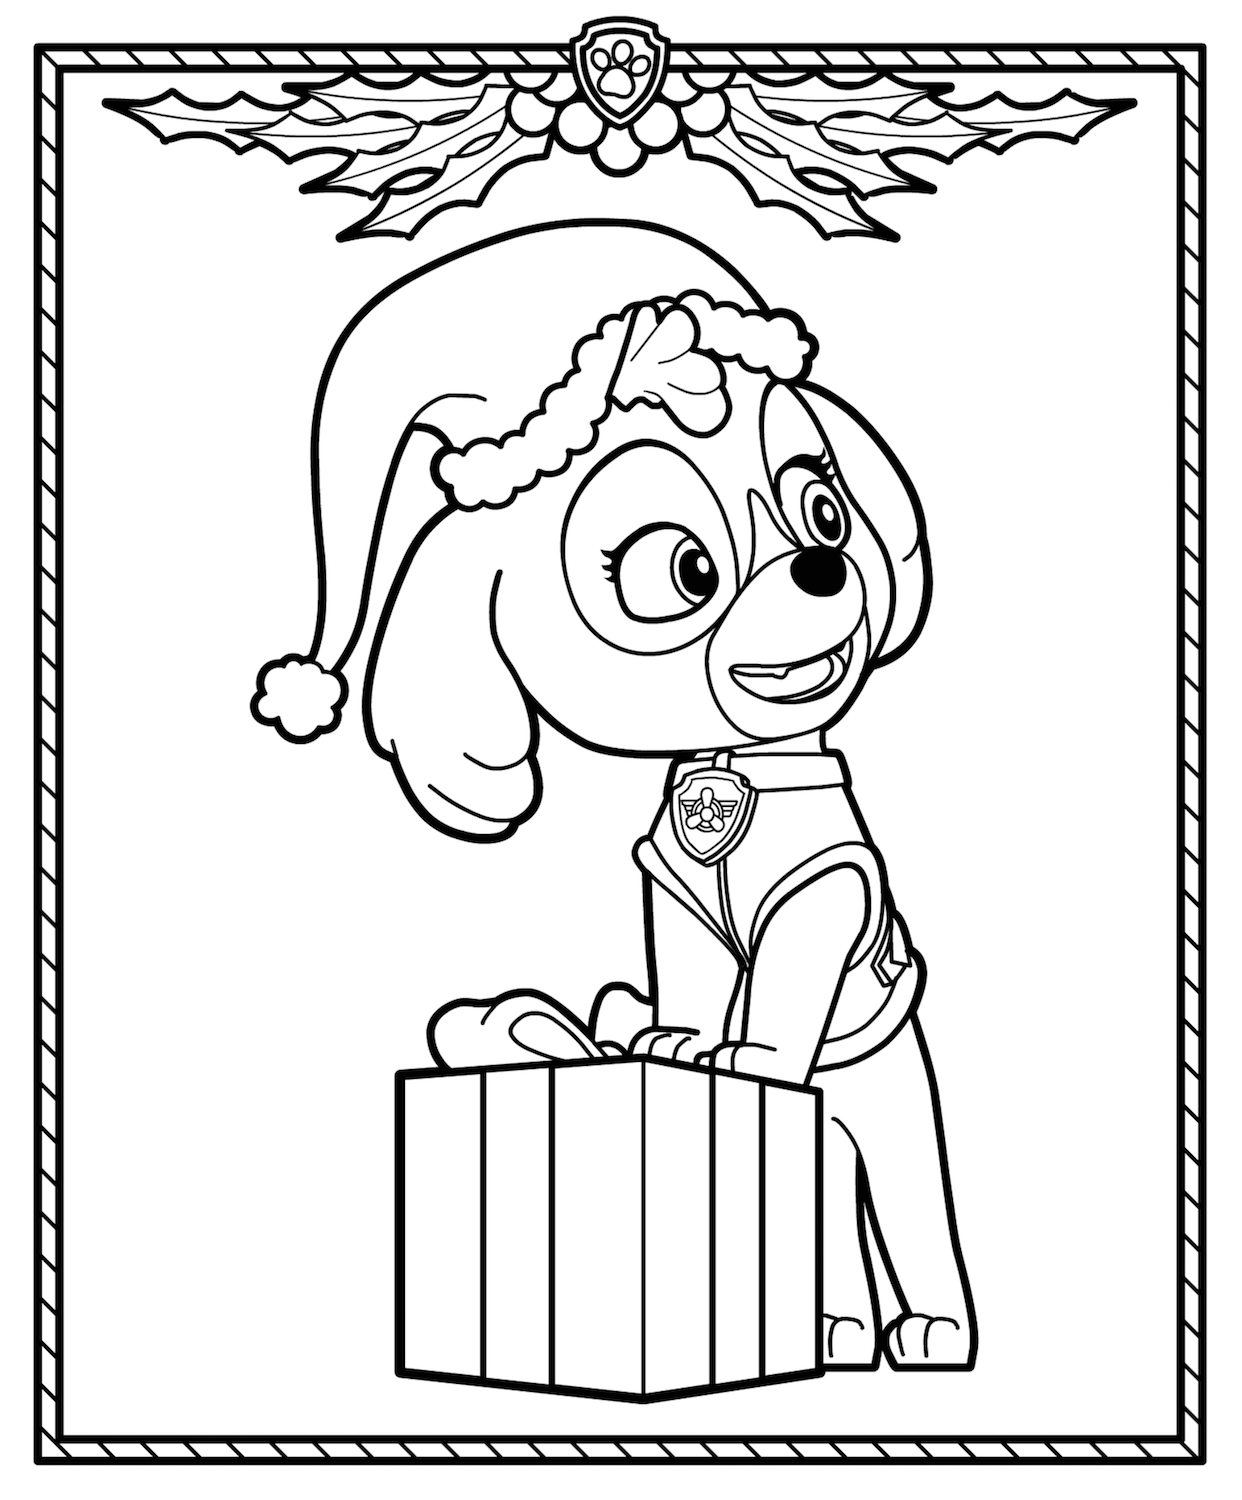 Skye Christmas coloring page